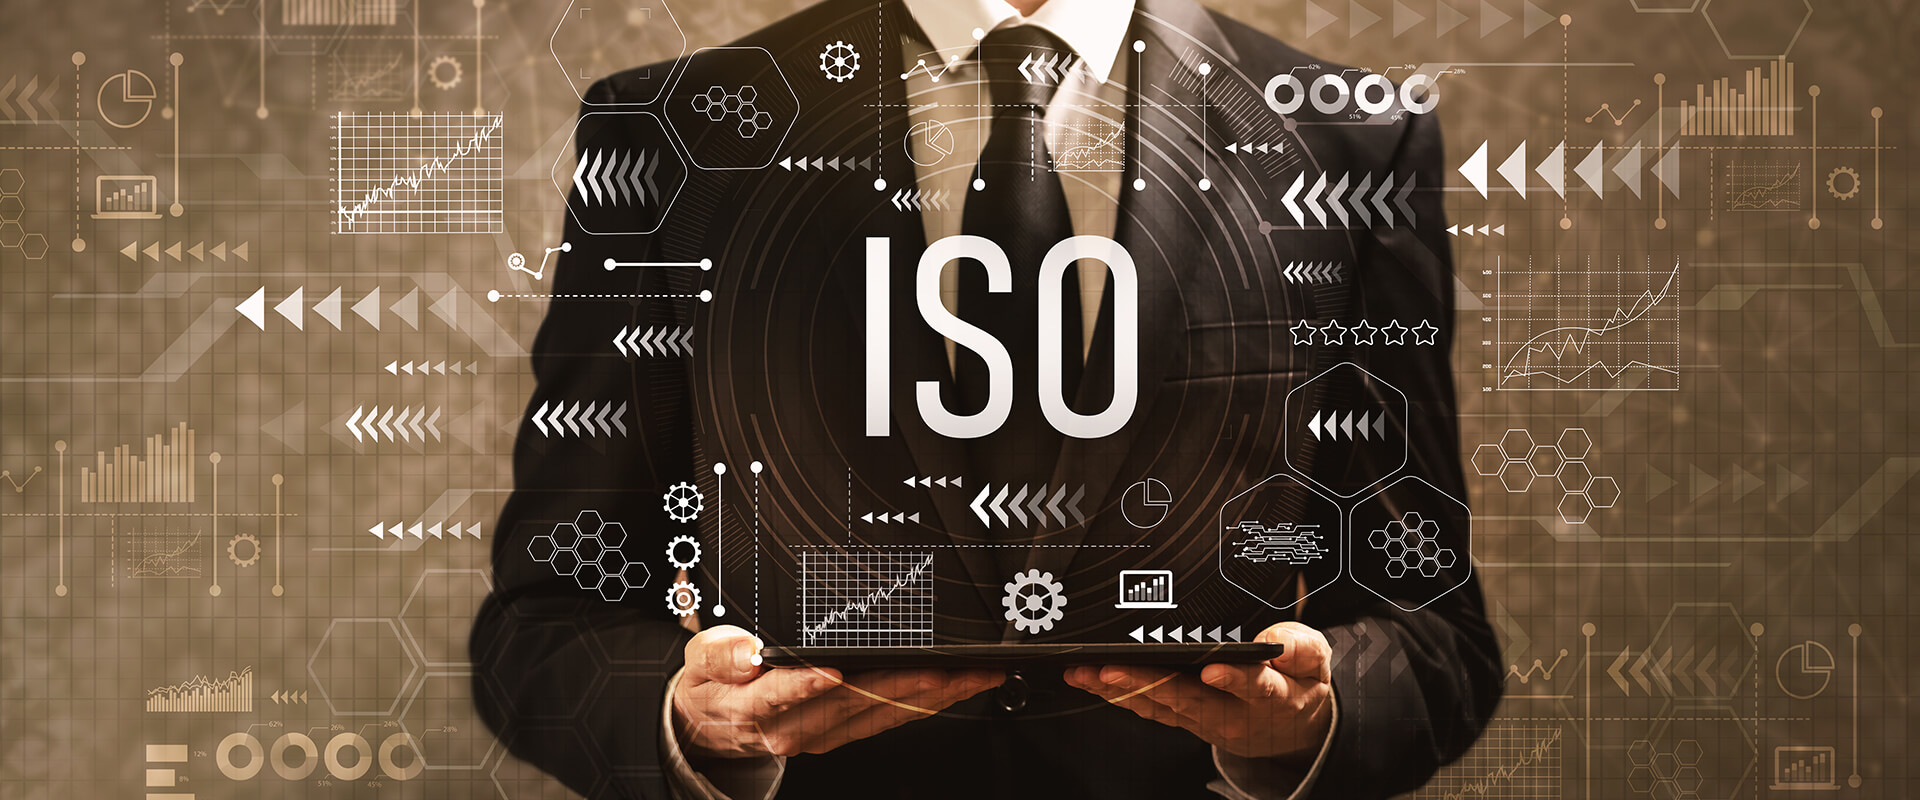 情報セキュリティマネジメントシステム「ISO/IEC 27001:2013」